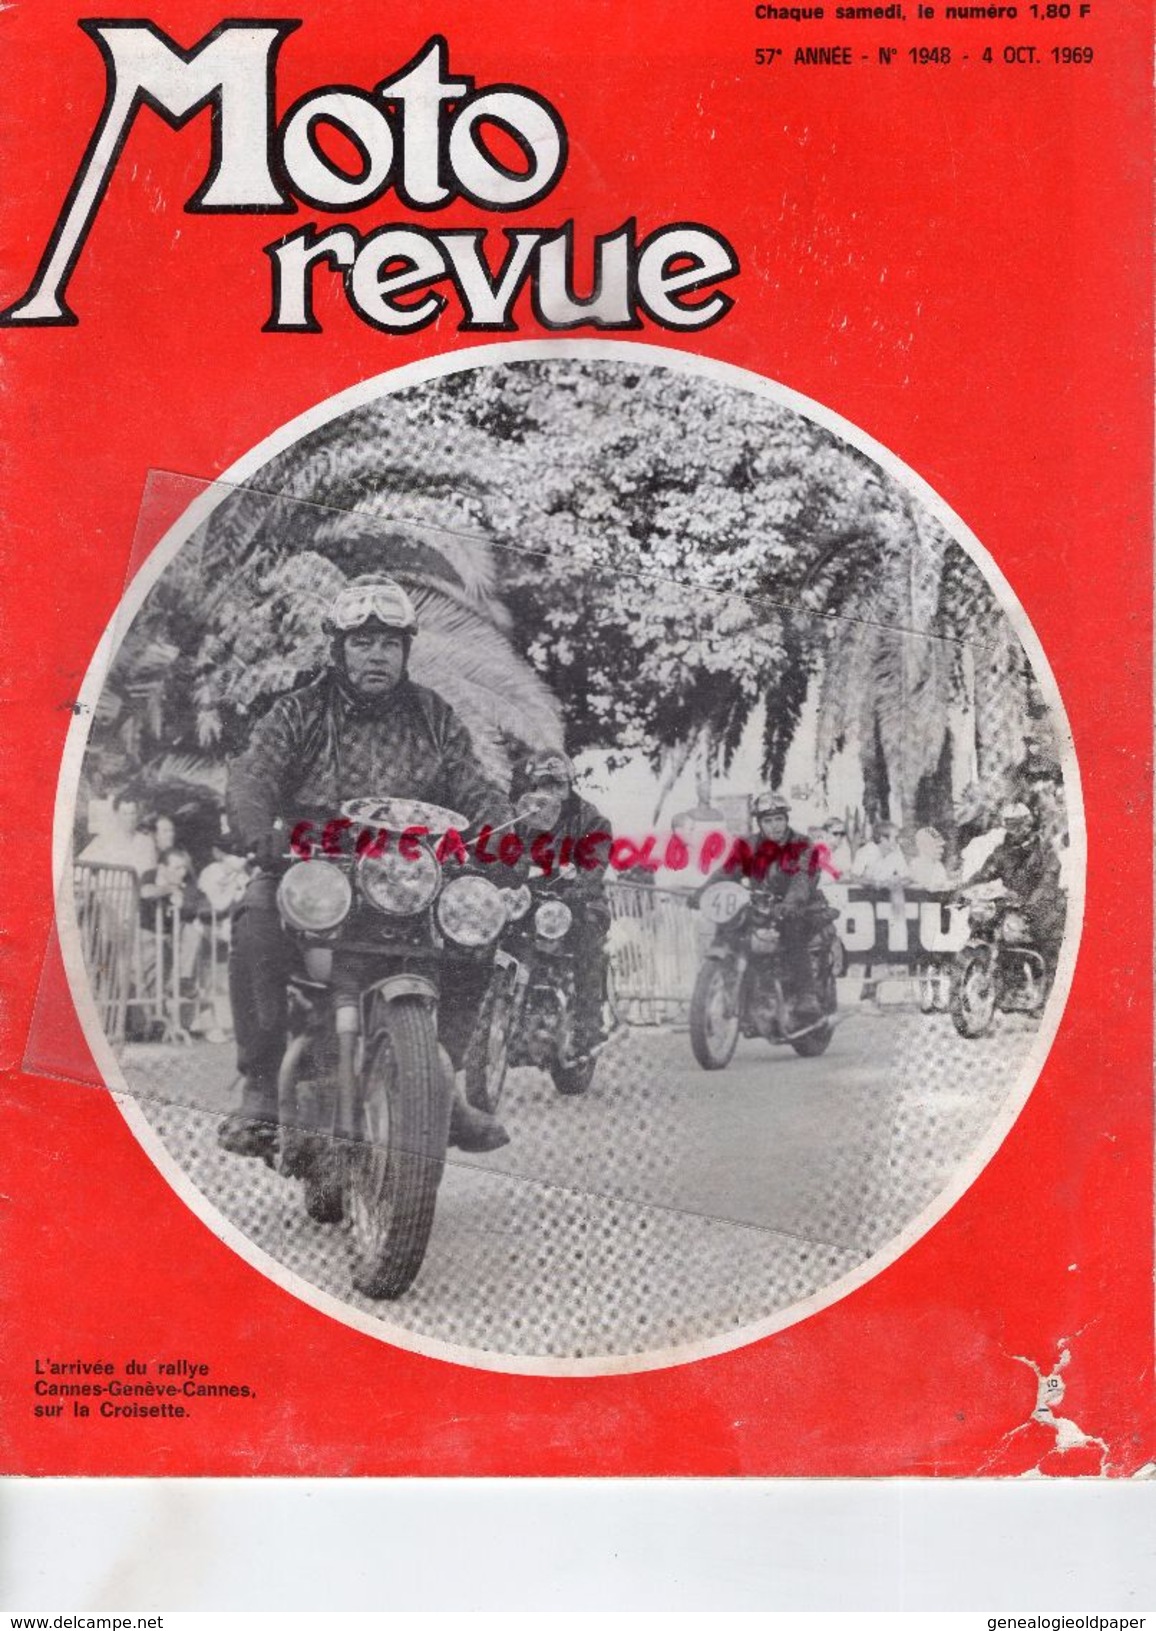 MOTO REVUE - N° 1948- 4-10-1969-RALLYE CANNES GENEVE-J.POCH NEUILLY-JAWA CZALETTA AERMACCHI-YOUGOSLAVIE-CROSS A CASSEL- - Motorrad